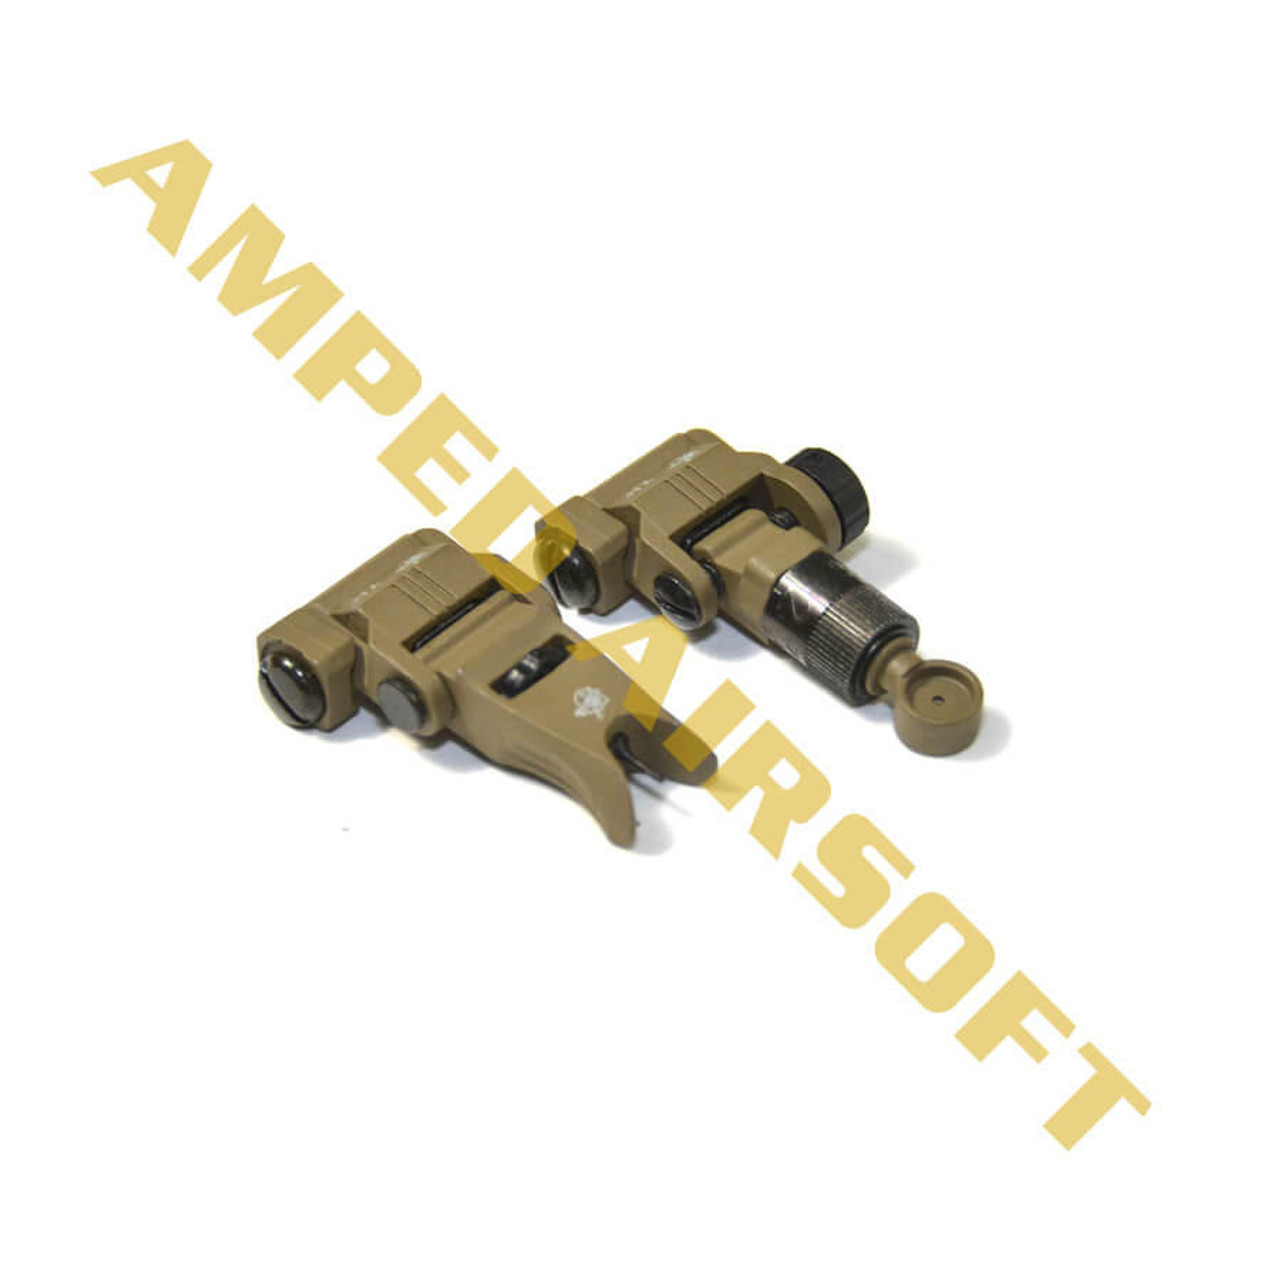  Knights Armament Airsoft - Back Up Iron Sights (Tan) 